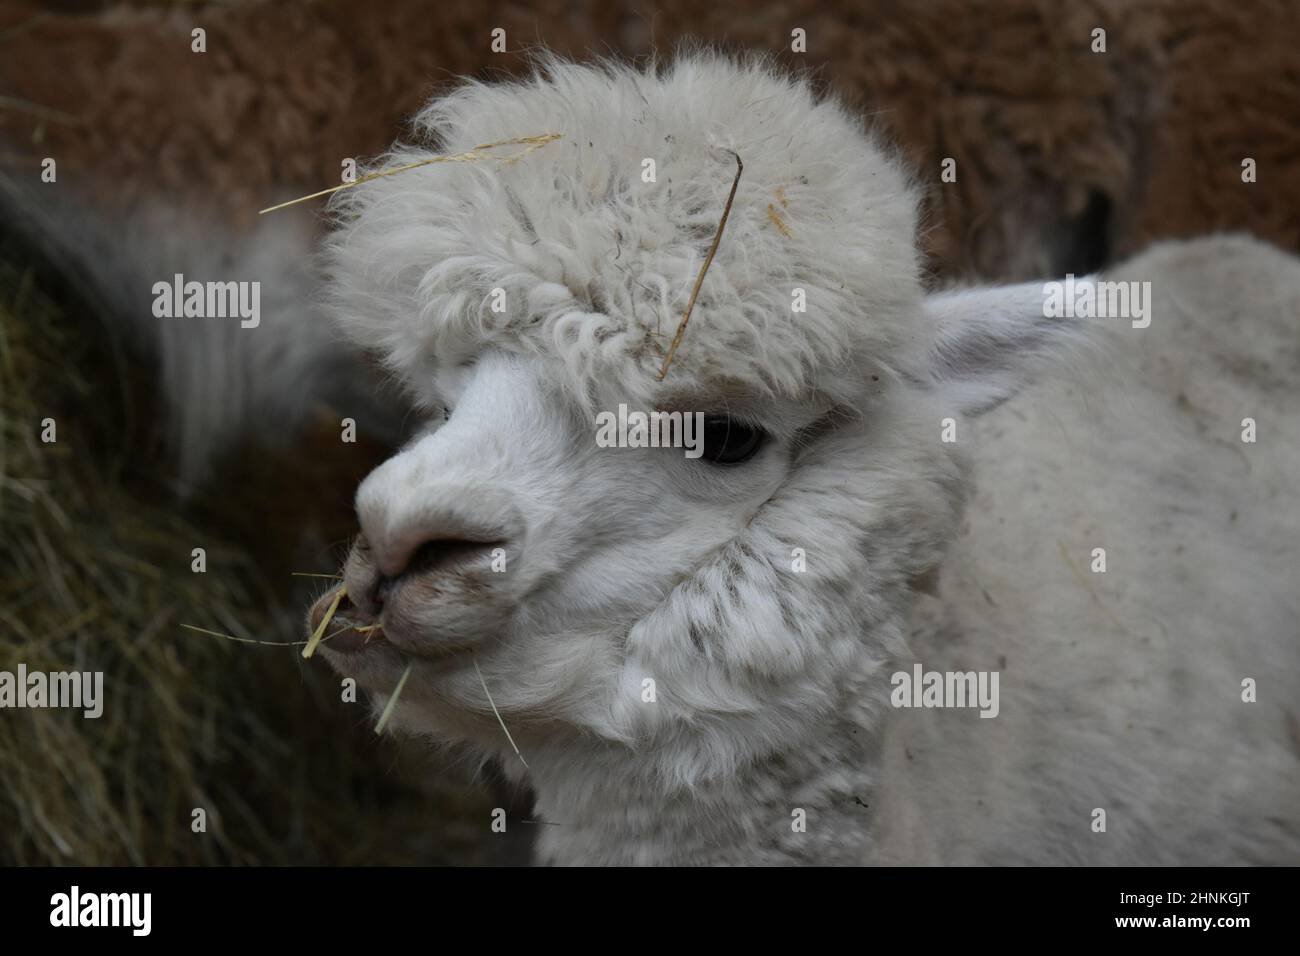 süßes, kleines, weißes Alpaka futtert Heu und schaut in die Kamera, Alpaka, süß, Vicugna pacos Stock Photo